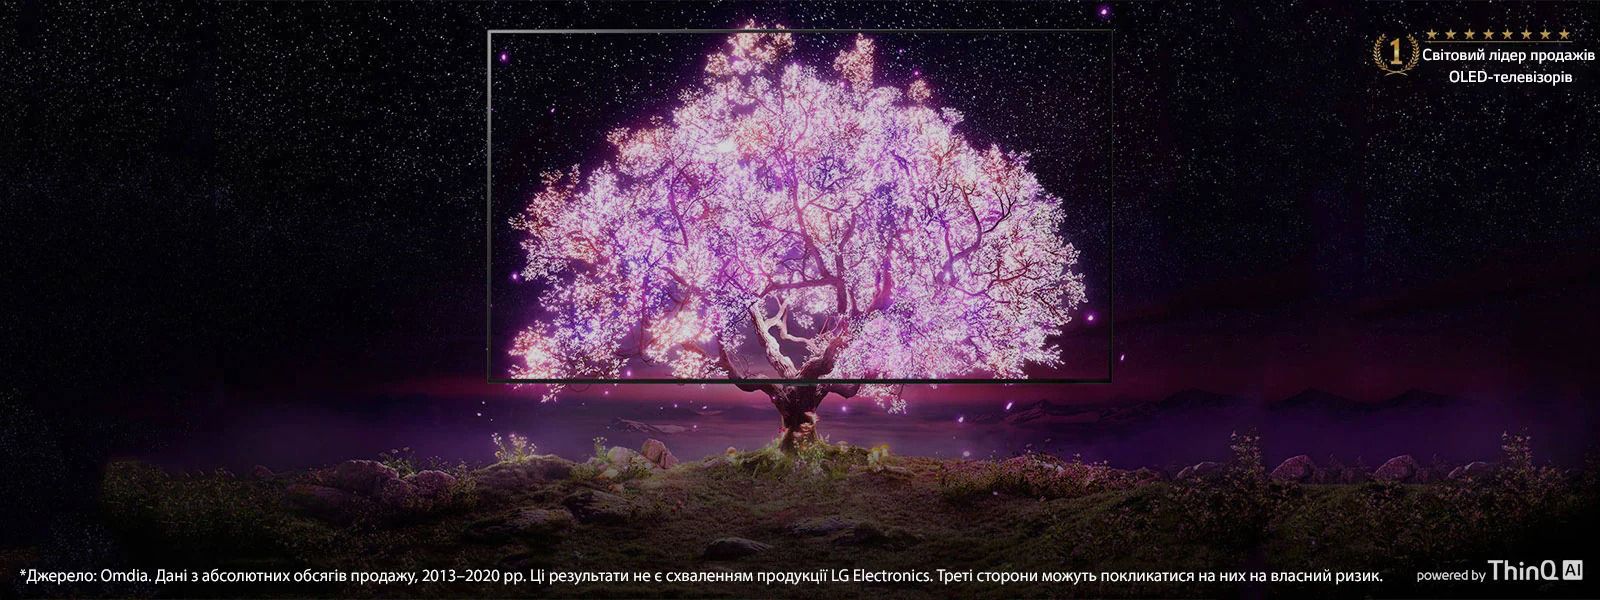 Сцена, коли кадр OLED-телевізора перекрито зображенням, на якому показано дерево, що сяє рожевим світлом. Логотип «Виробник №1 OLED-телевізорів у світі» розміщено у верхньому правому куті. Логотип «із технологією ThinQ AI» розміщено в нижньому правому куті. Логотип «LG OLED evo» розміщено у верхньому лівому куті. Унизу в центрі кнопка «ДОКЛАДНІШЕ».